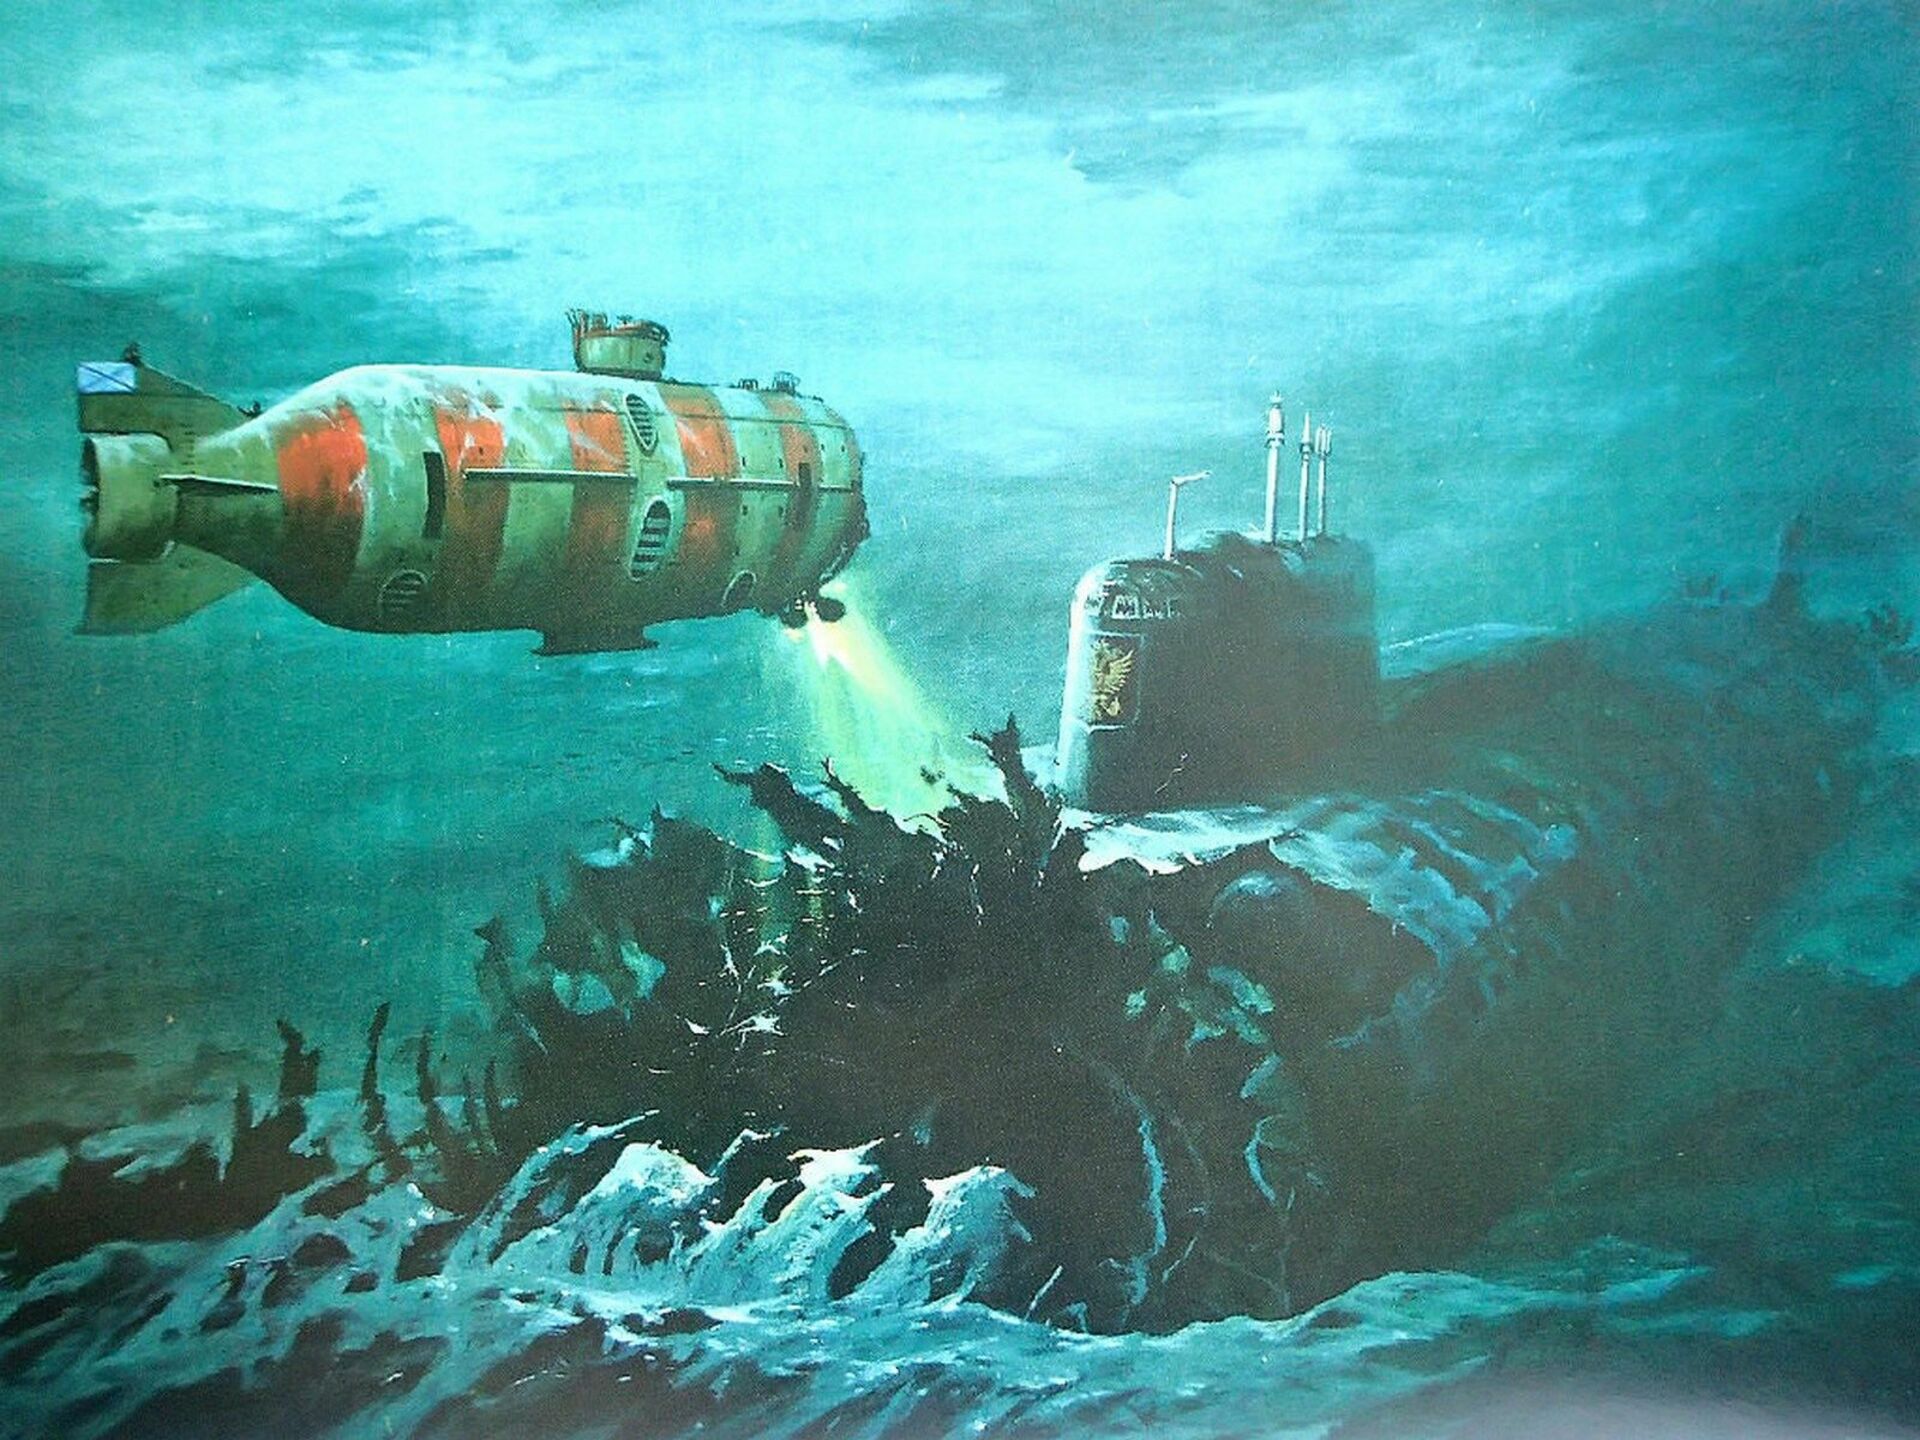 Курск субмарина в мутной воде. Подводная лодка к-141 «Курск». Курск 141 атомная подводная лодка. К-141 «Курск». Курск 2000 подводная лодка.